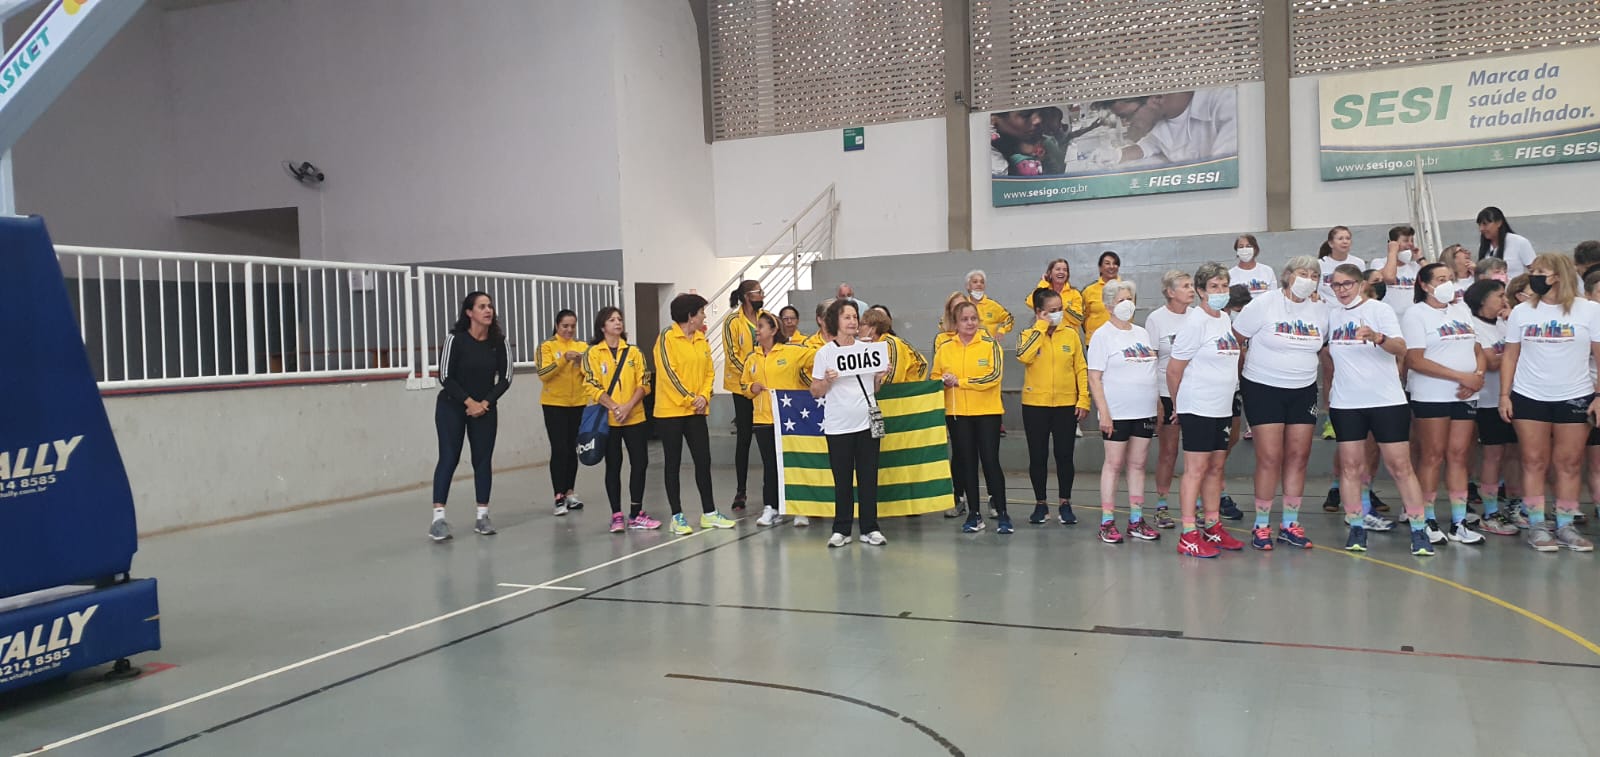 Com apoio da Secretaria de Estado de Esporte e Lazer, Goiânia sedia Campeonato Brasileiro Feminino de Voleibol Master